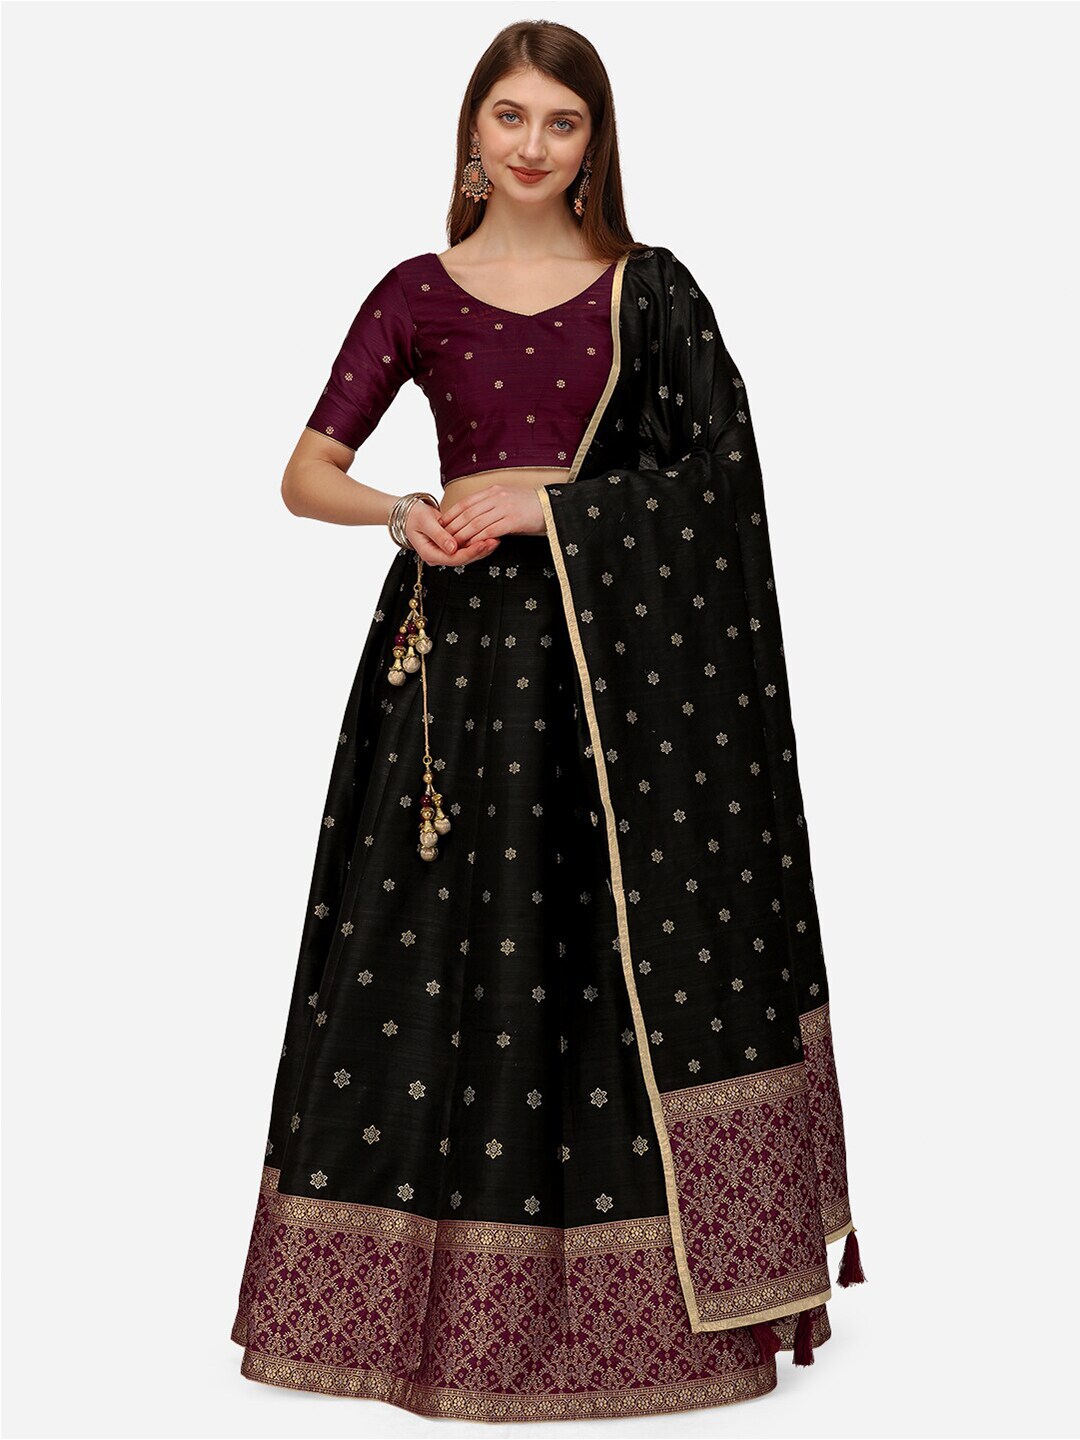 NAKKASHI Black & Maroon Semi-Stitched Banarasi Lehenga & Unstitched Blouse With Dupatta Price in India